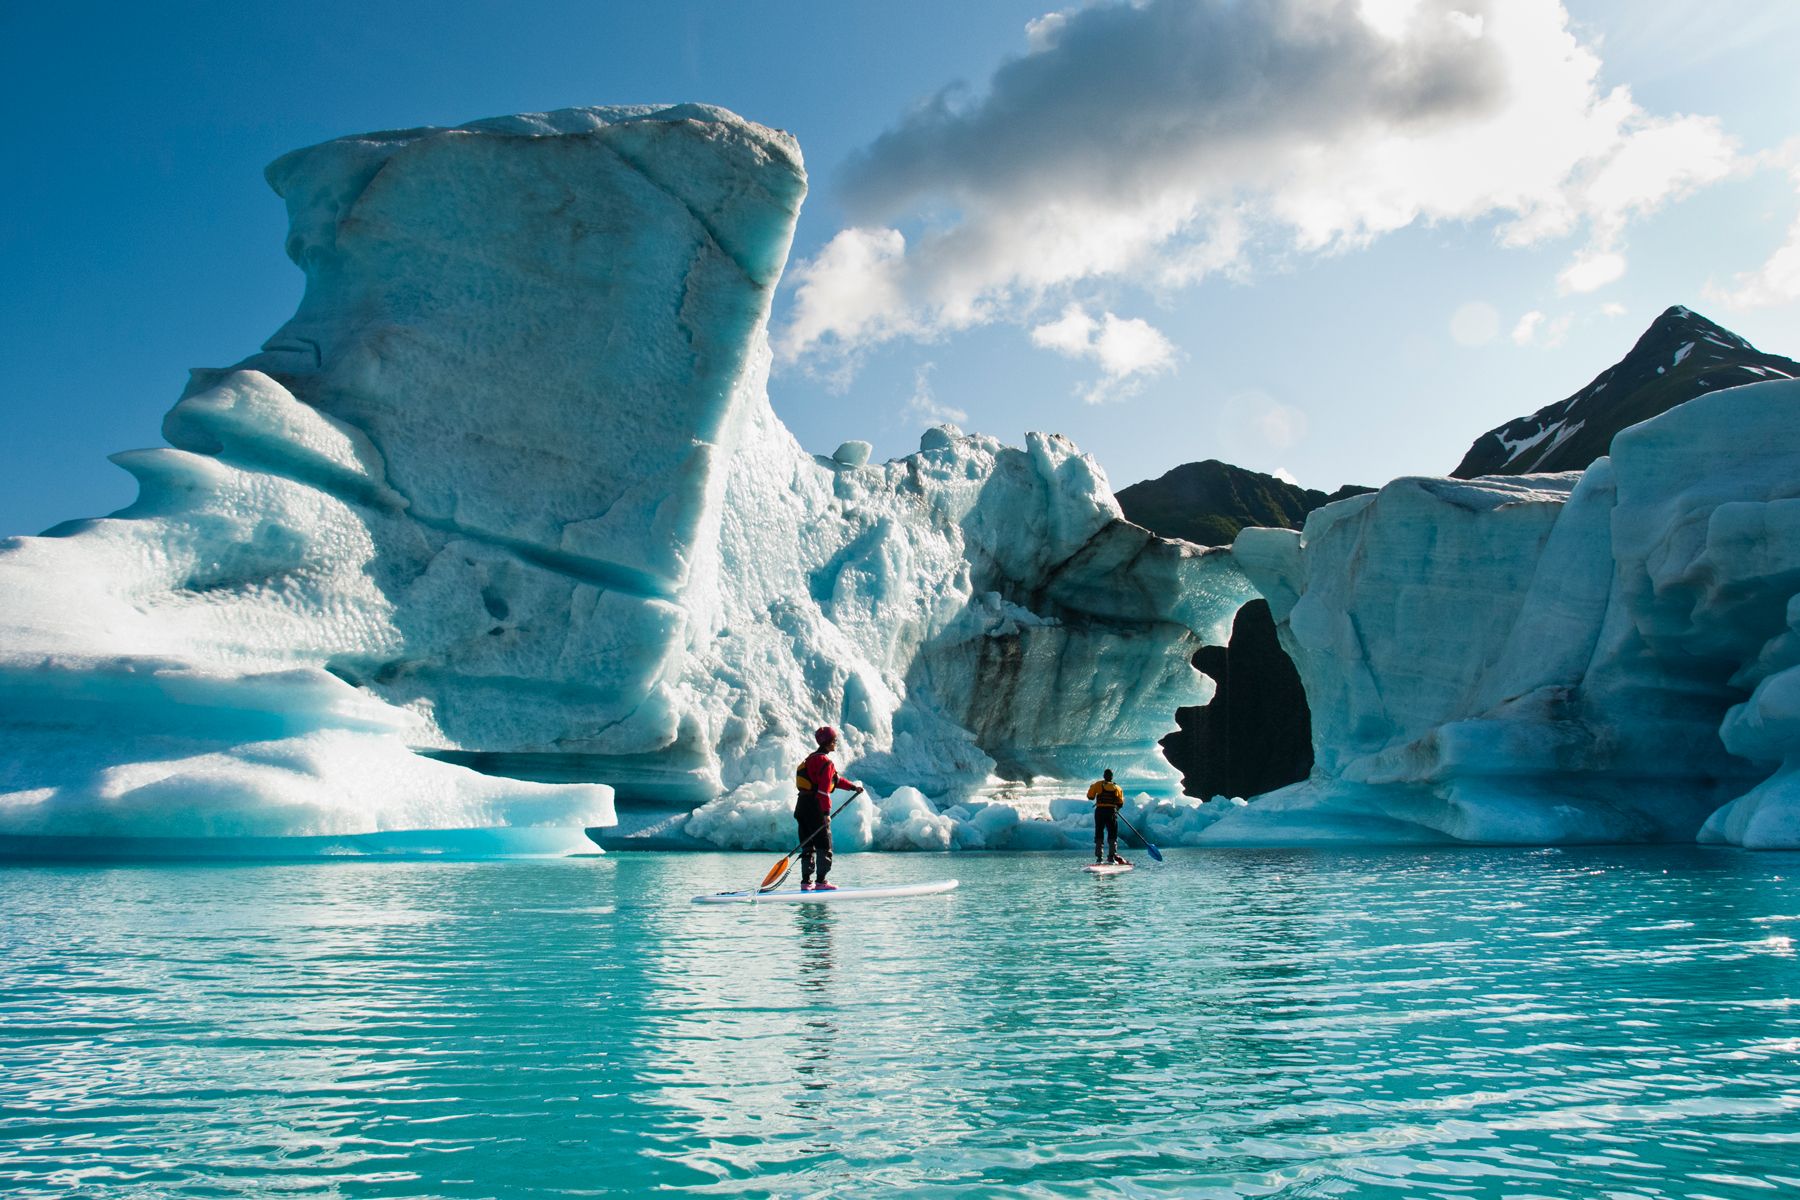 Dui adulti nantu à u stand up paddle board (SUP) osservanu u foru fundutu in l'iceberg nantu à u Lago Bear in u Parcu Naziunale di i Fiordi Kenai, Alaska.